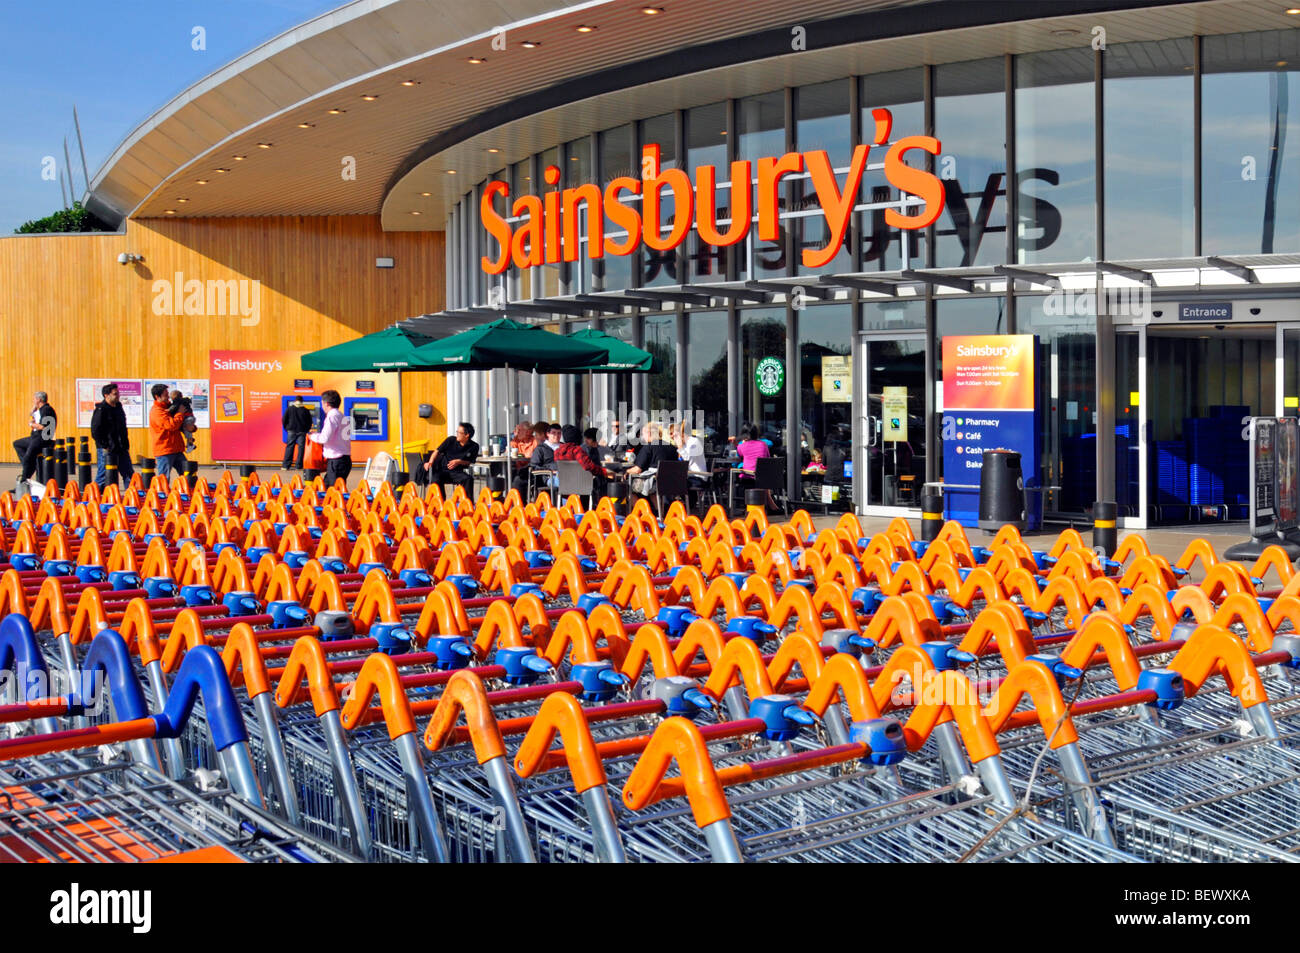 Sainsburys, supermercato, insegna e negozio, parcheggio carrello e ingresso al negozio con caffetteria Starbucks, Greenwich, Londra, Inghilterra, Regno Unito Foto Stock